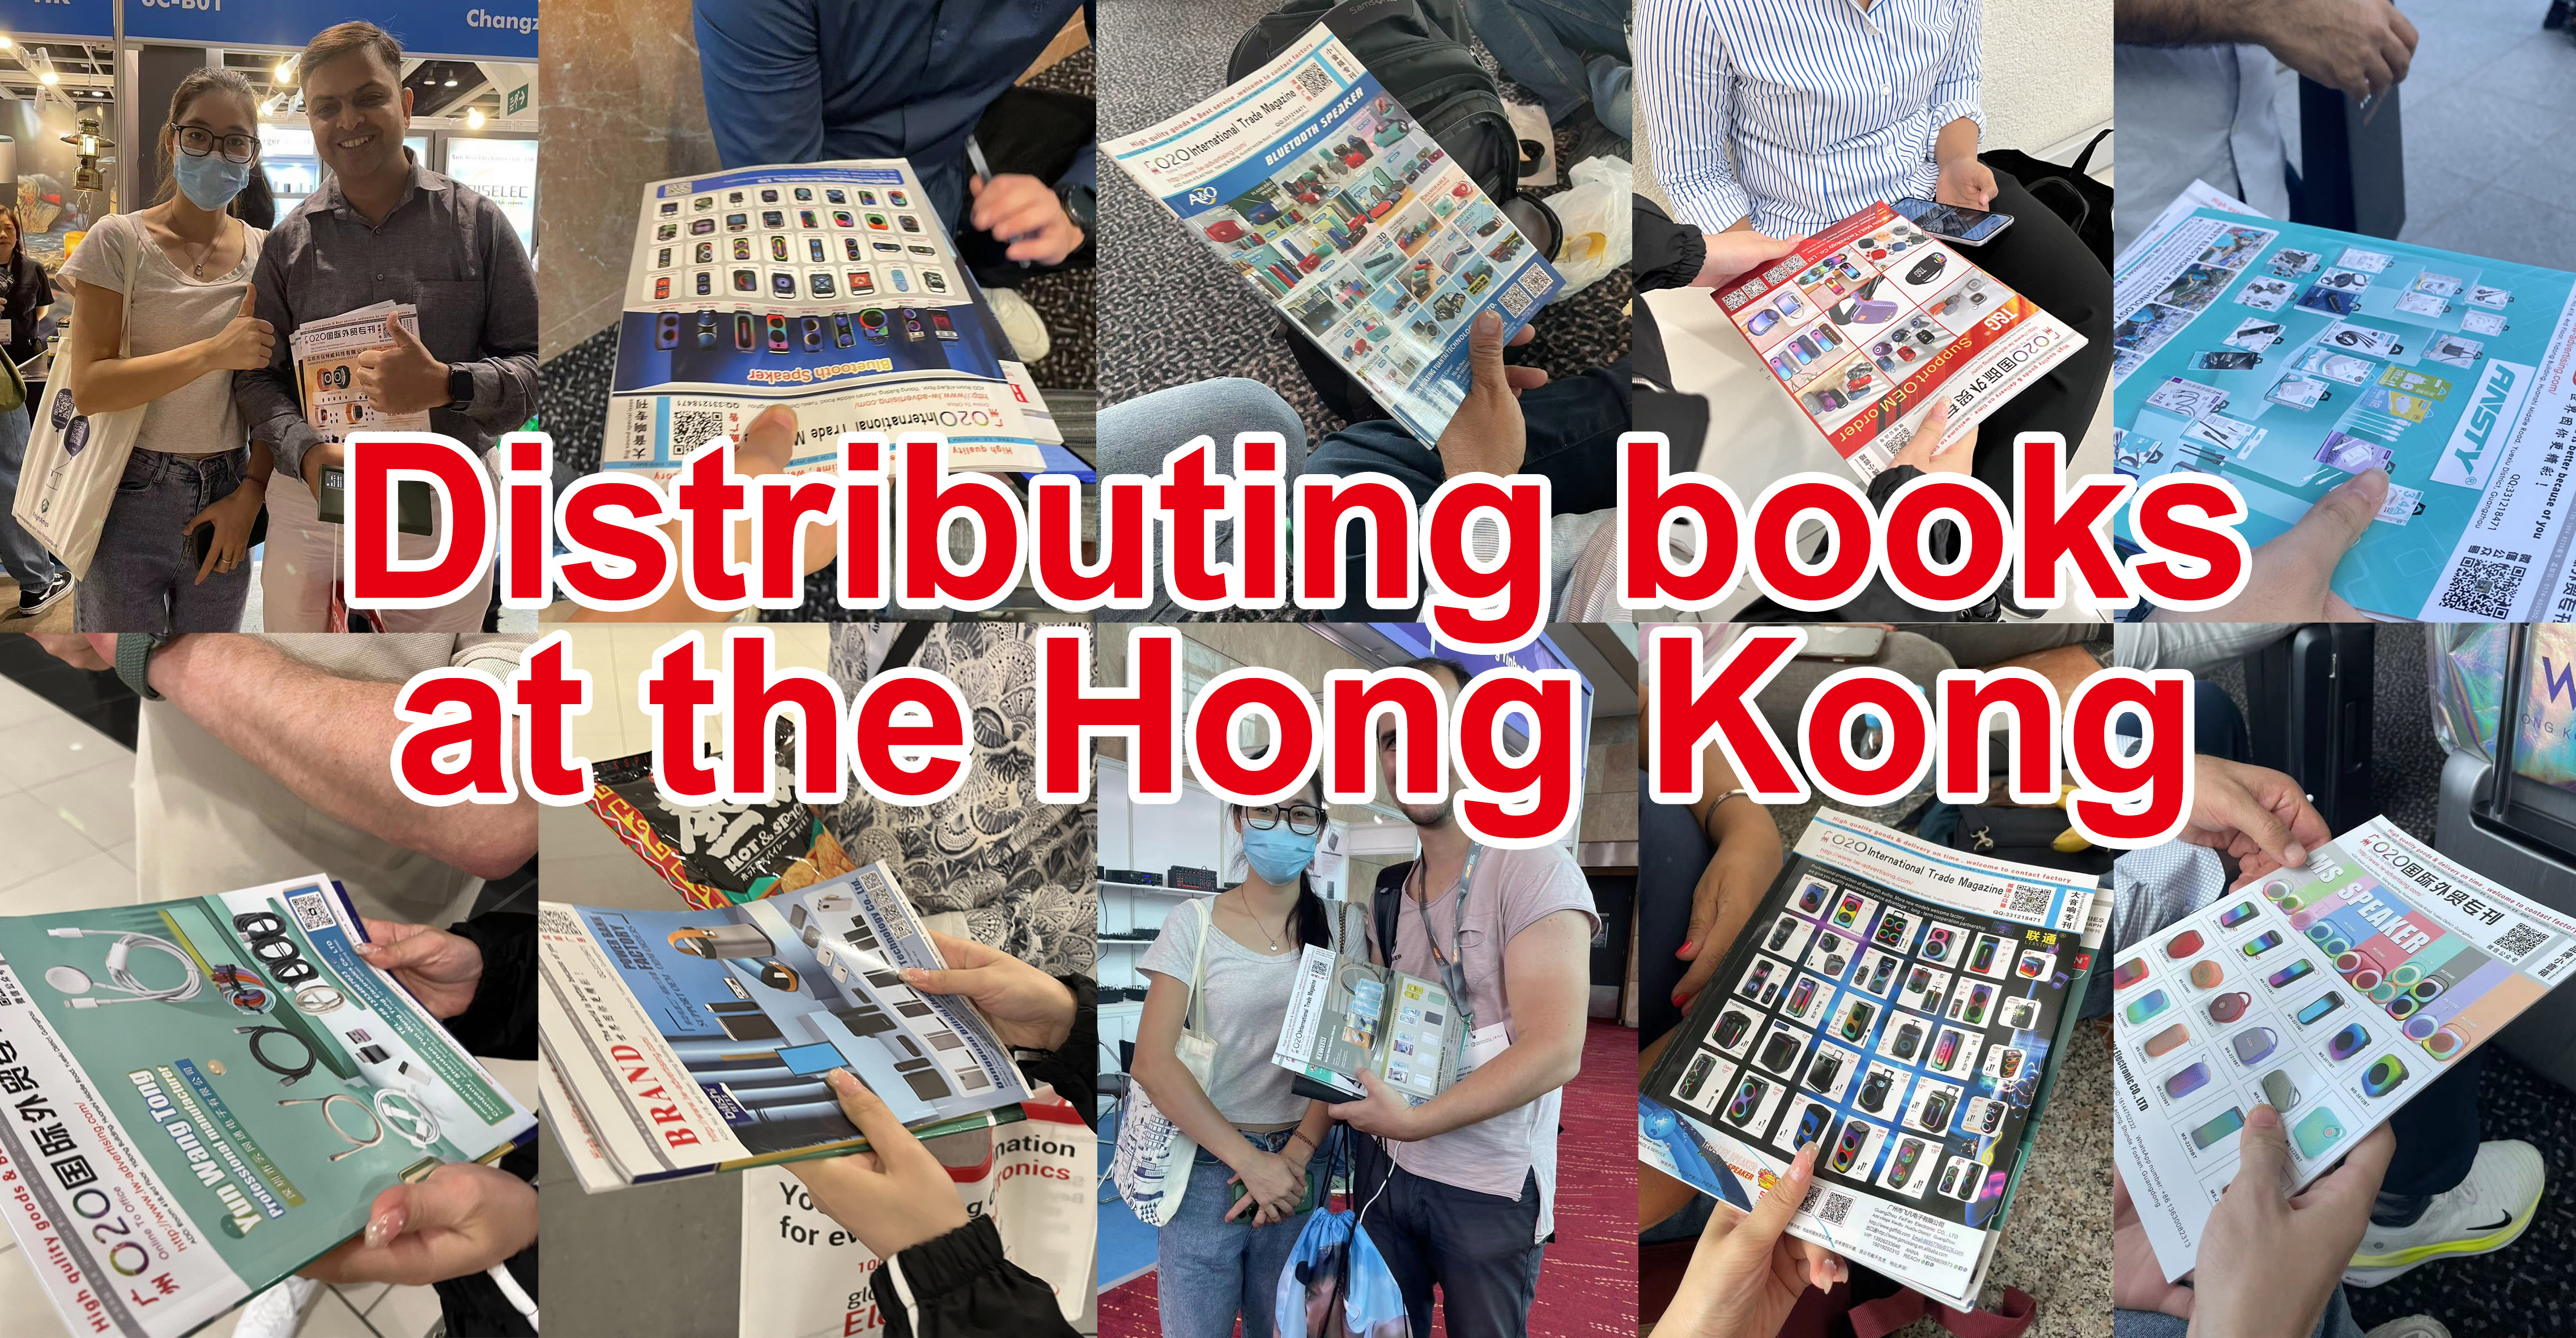 Distributing books at the Hong Kong